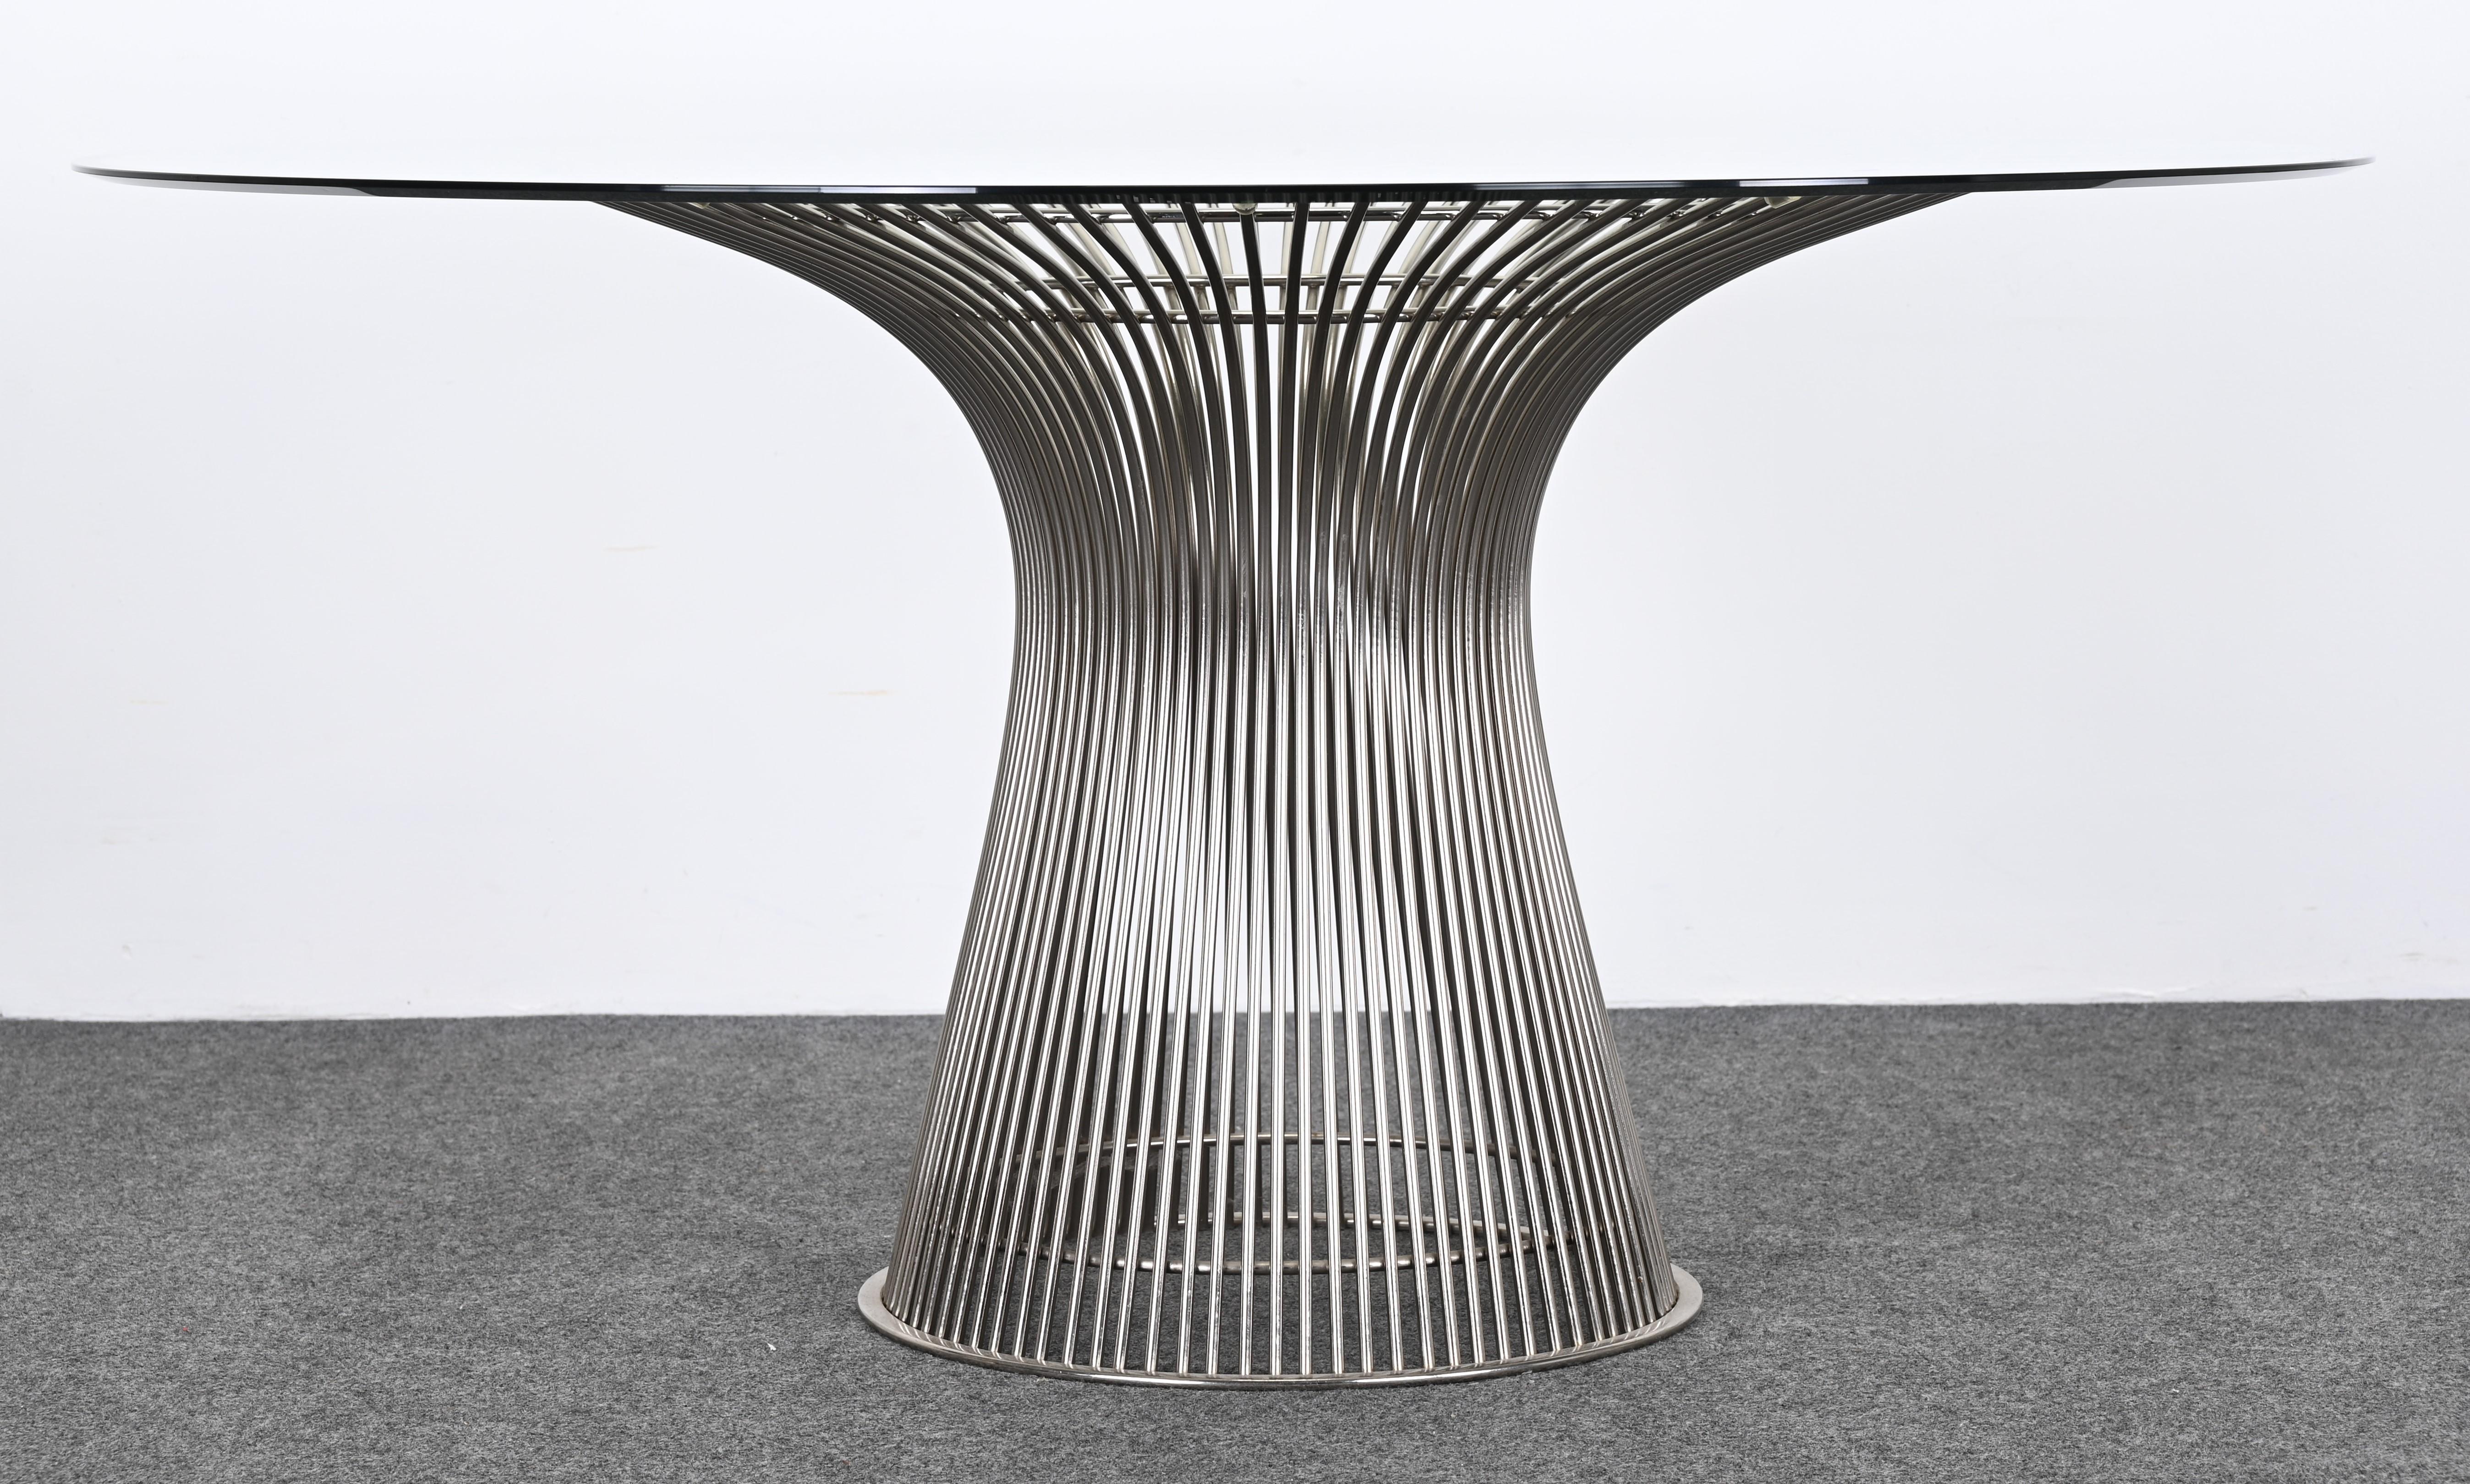 Ein exquisiter Tisch, entworfen von Warren Platner für Knoll. Dieser ikonische Esstisch passt hervorragend zu jeder Einrichtung im zeitgenössischen, im Übergangsstil oder im traditionellen Stil. Dieses Set hat ein zeitloses Design, das nie aus der